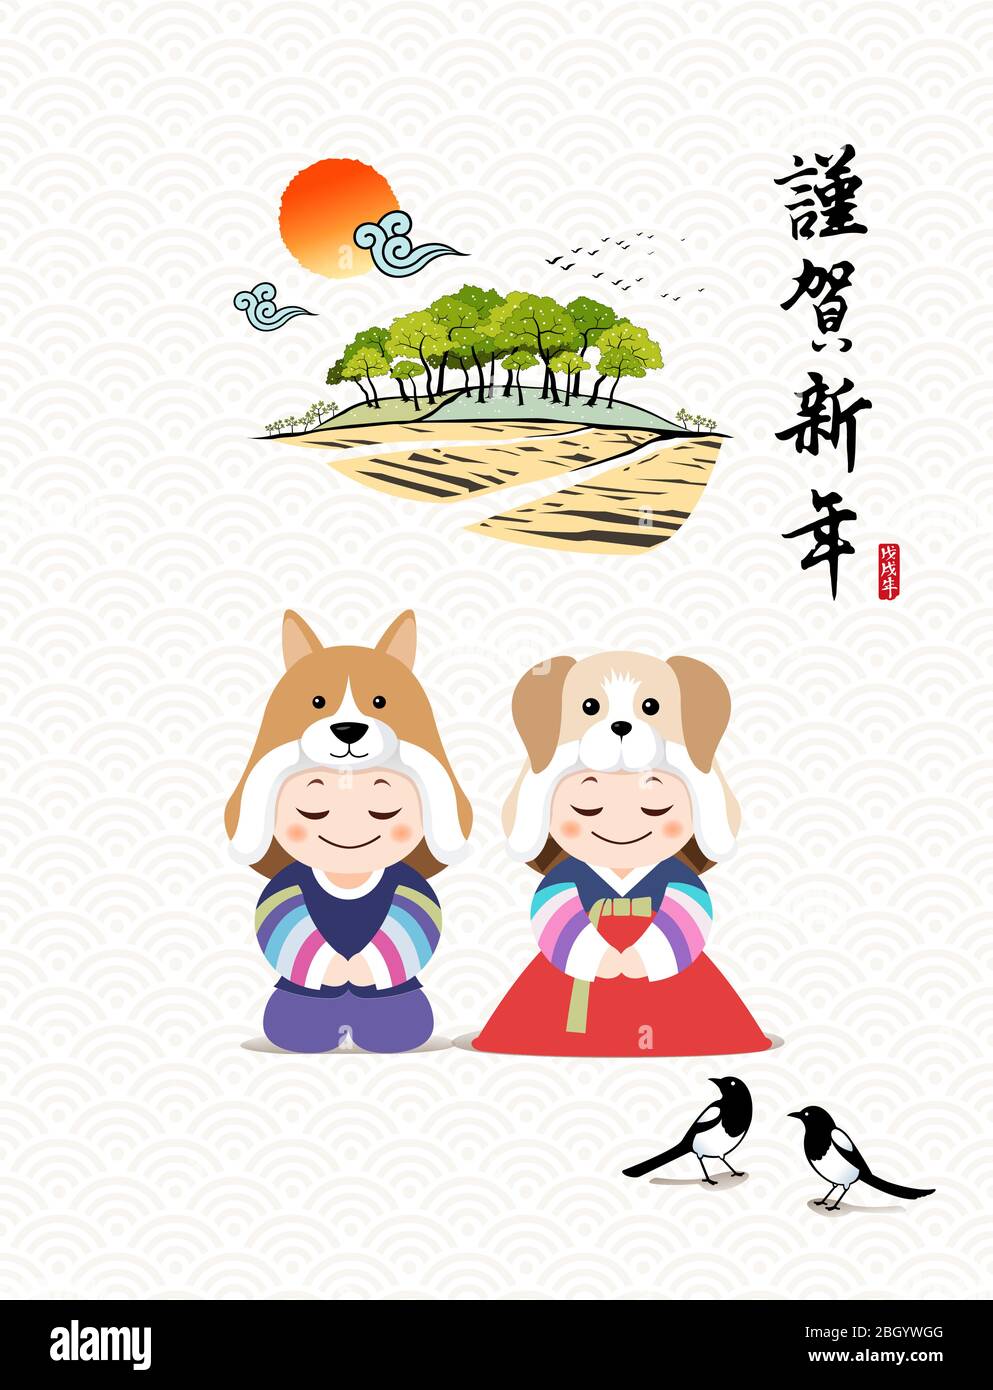 Frohes neues Jahr, Übersetzung des chinesischen Textes: Frohes neues Jahr, Kalligraphie und koreanische traditionelle Kinder begrüßen. Stock Vektor